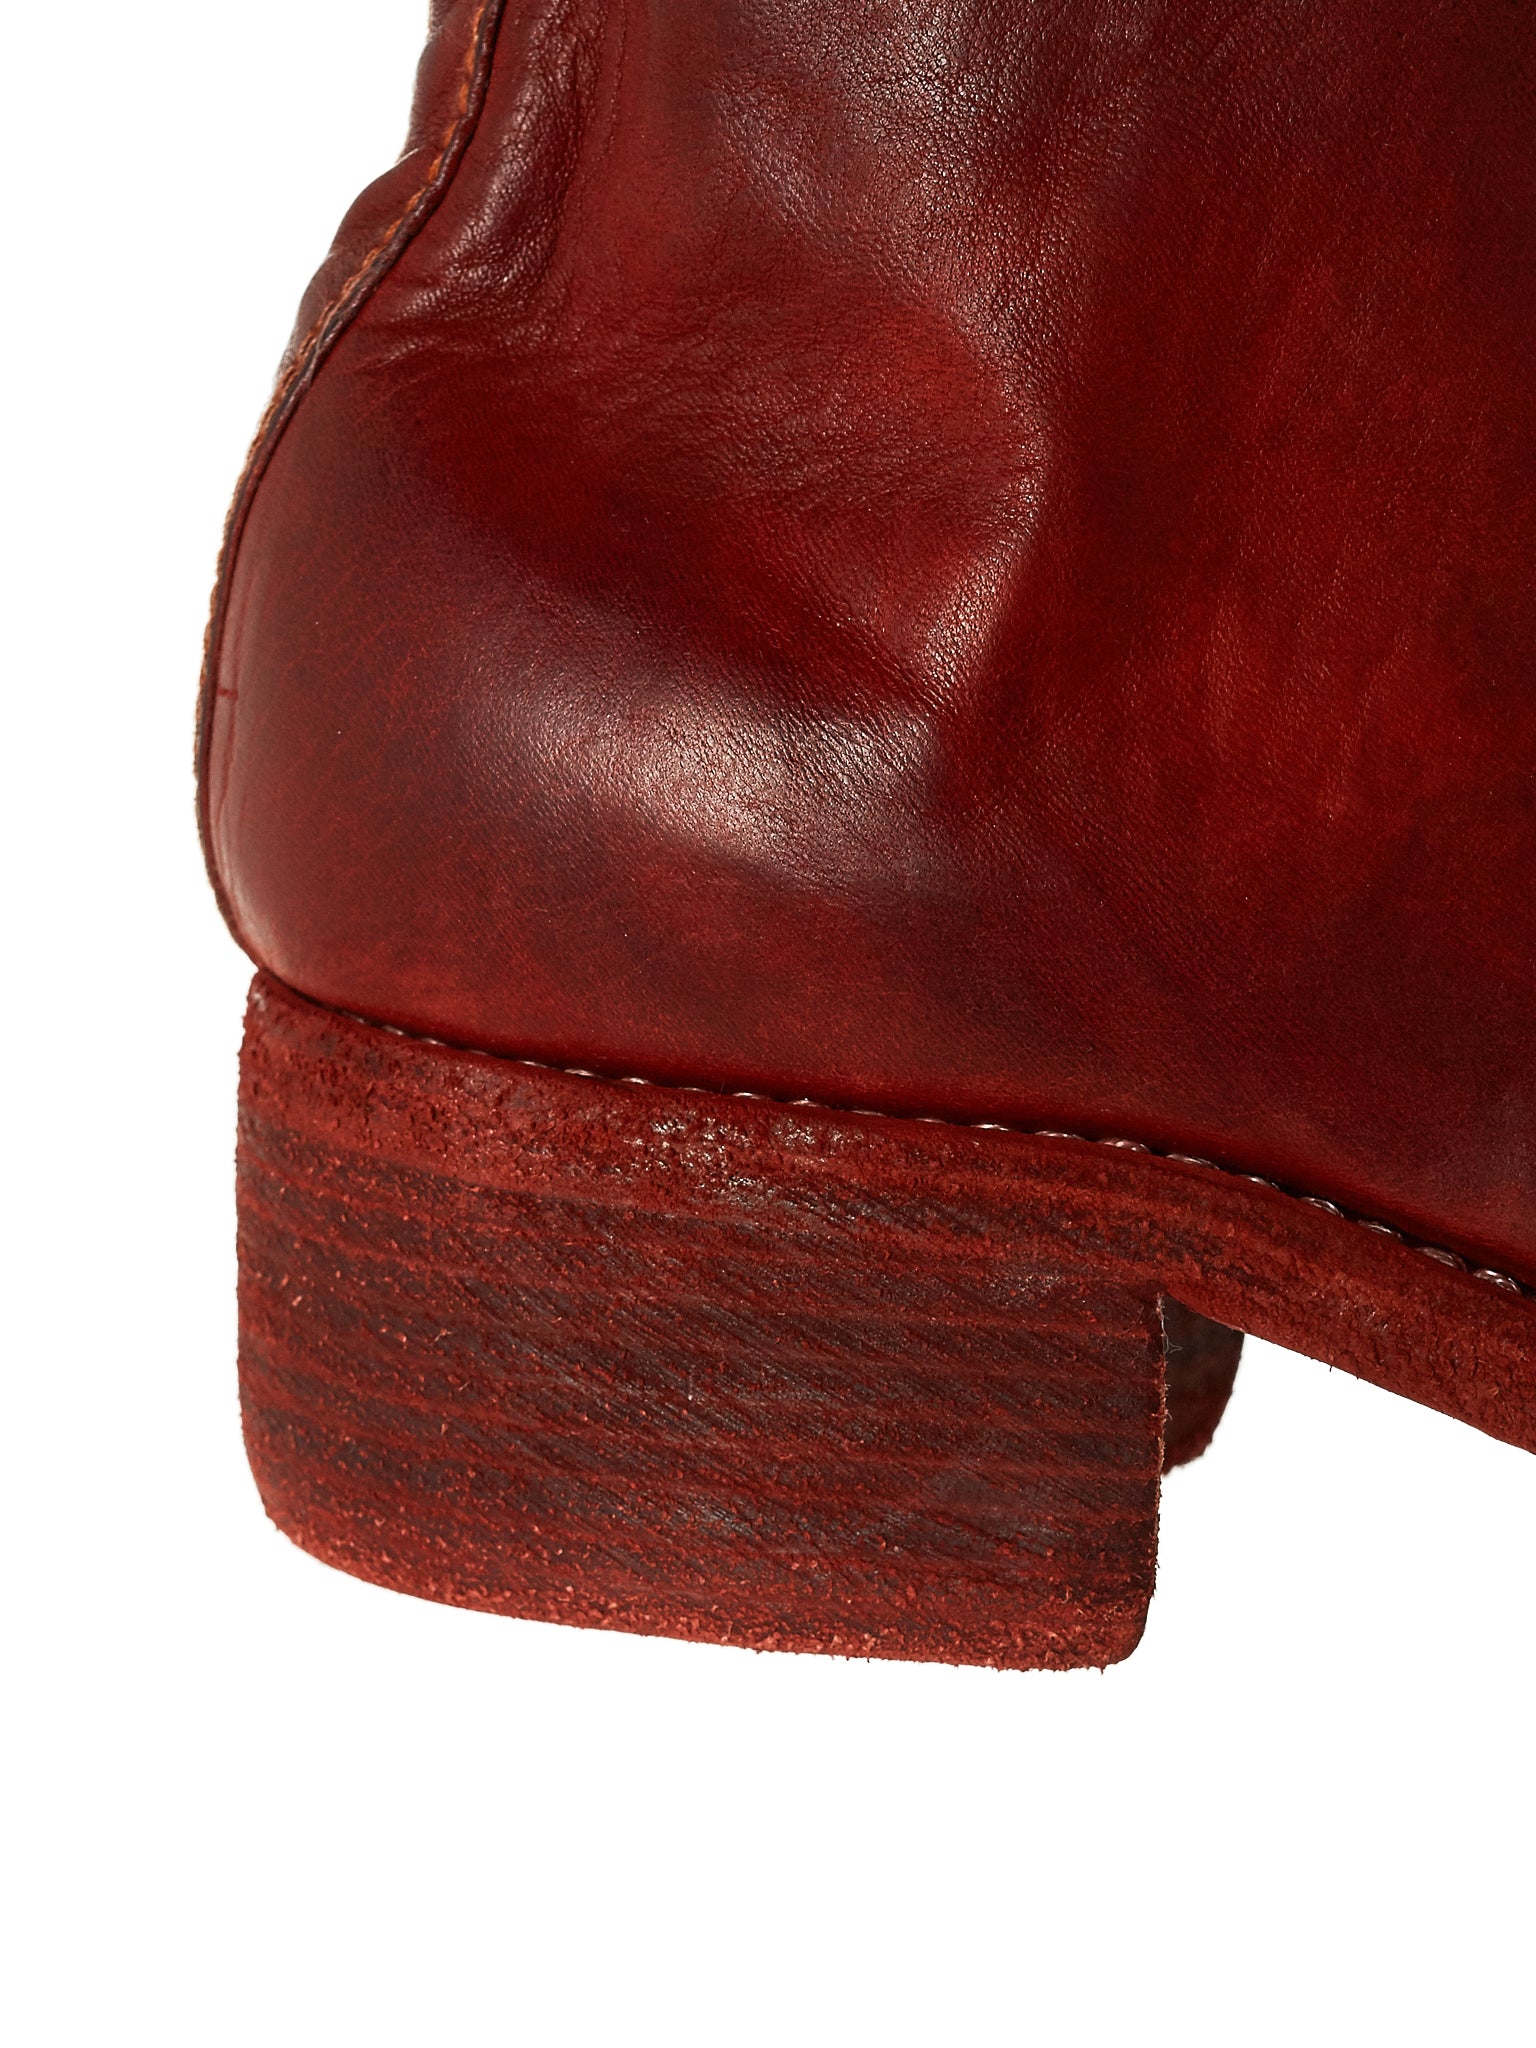 PL2 Soft Horse Leather Boots (PL2-SOFT-HORSE-FG-1006T)